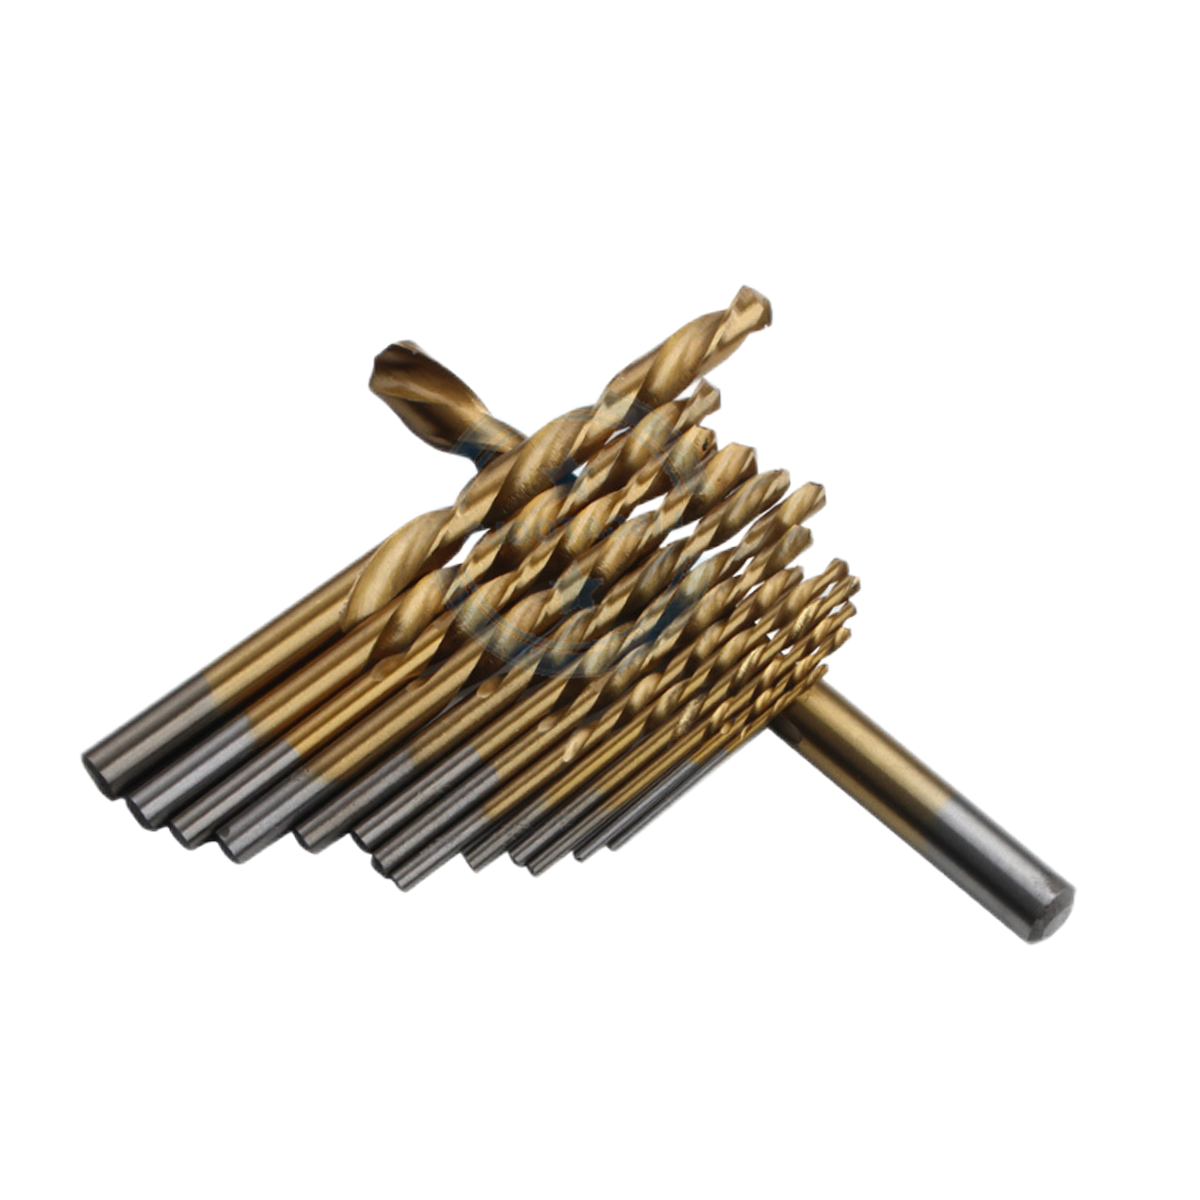 Hot sale Drill Tool For Wood - Elehand Straight Shank Twist Drill Bit – MACHINERY TOOLS